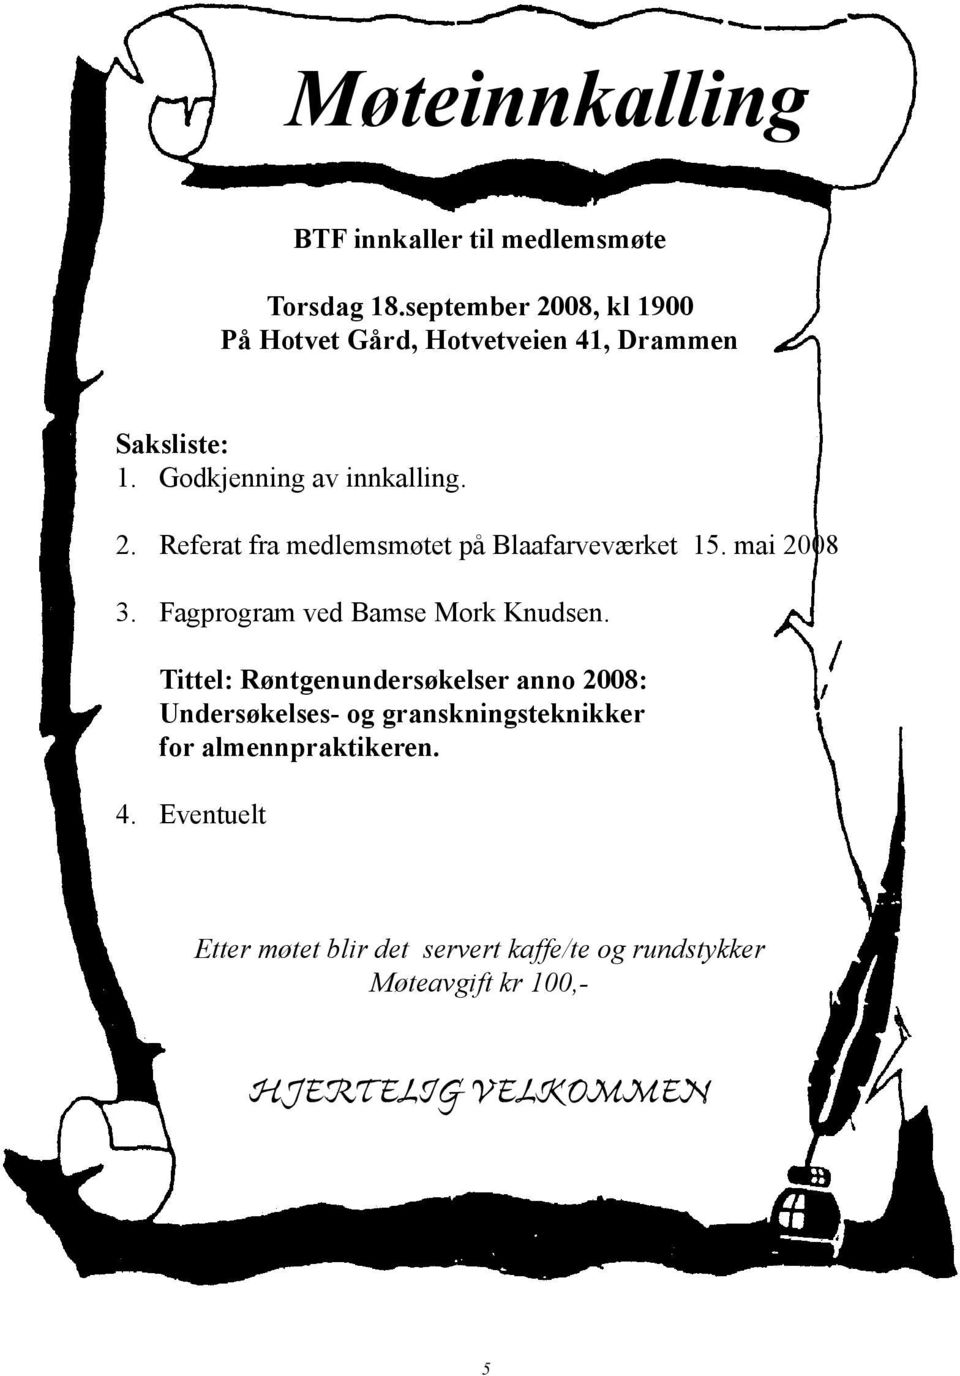 mai 2008 3. Fagprogram ved Bamse Mork Knudsen.